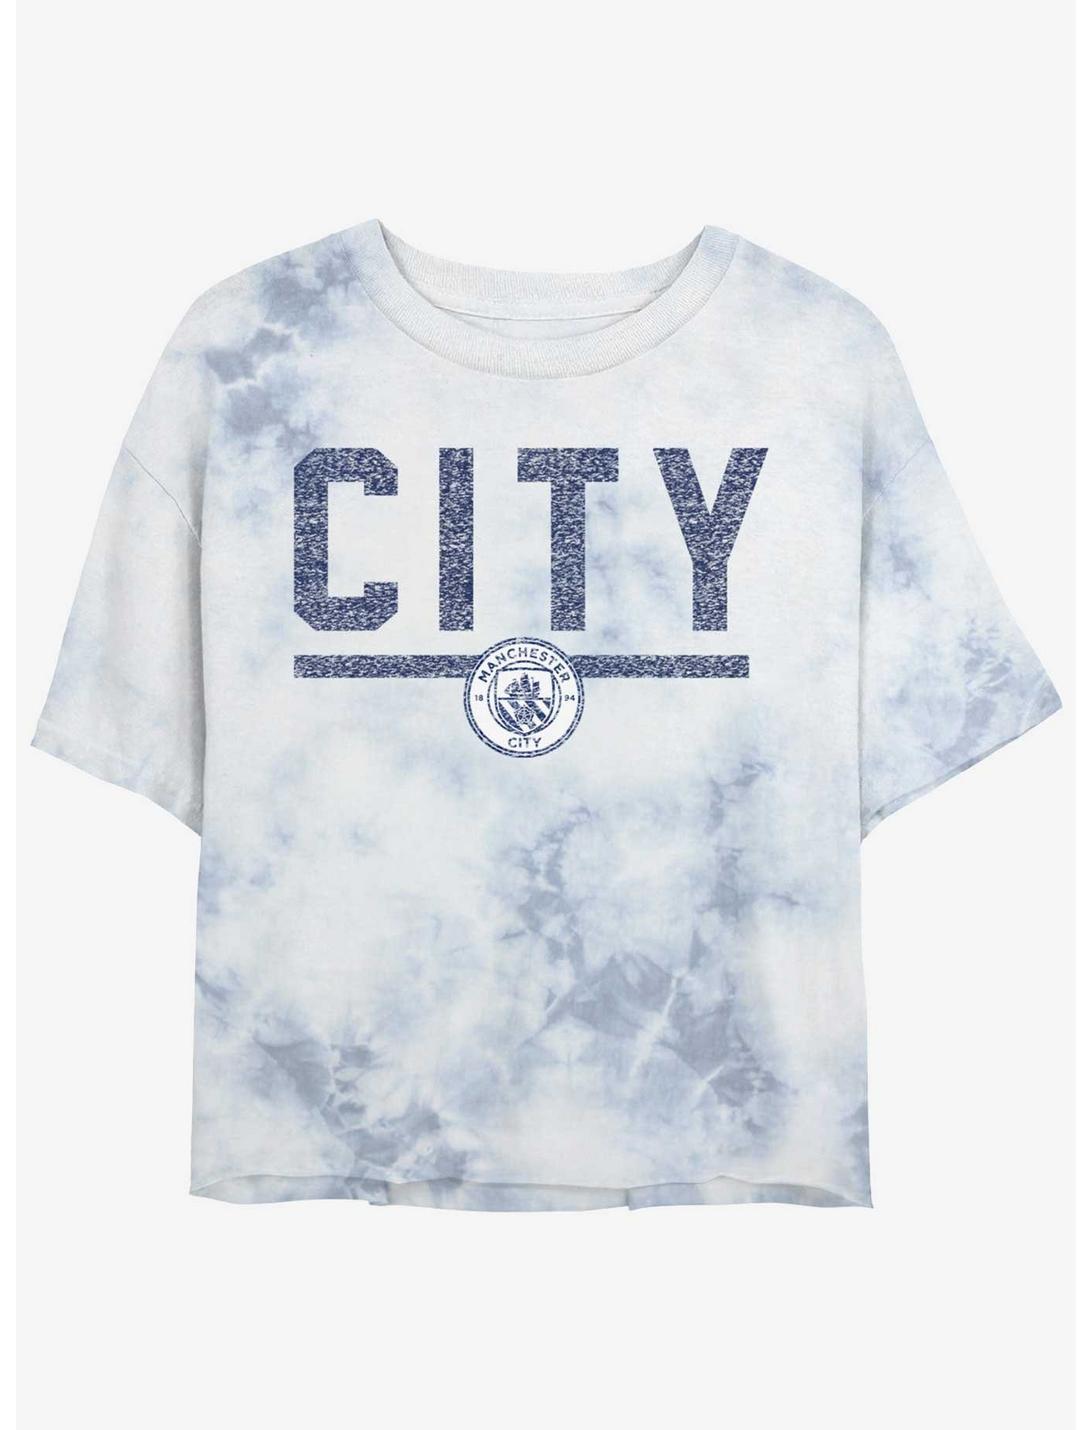 Premier League Manchester City F.C. Big City Tie-Dye Girls Crop T-Shirt, WHITEBLUE, hi-res